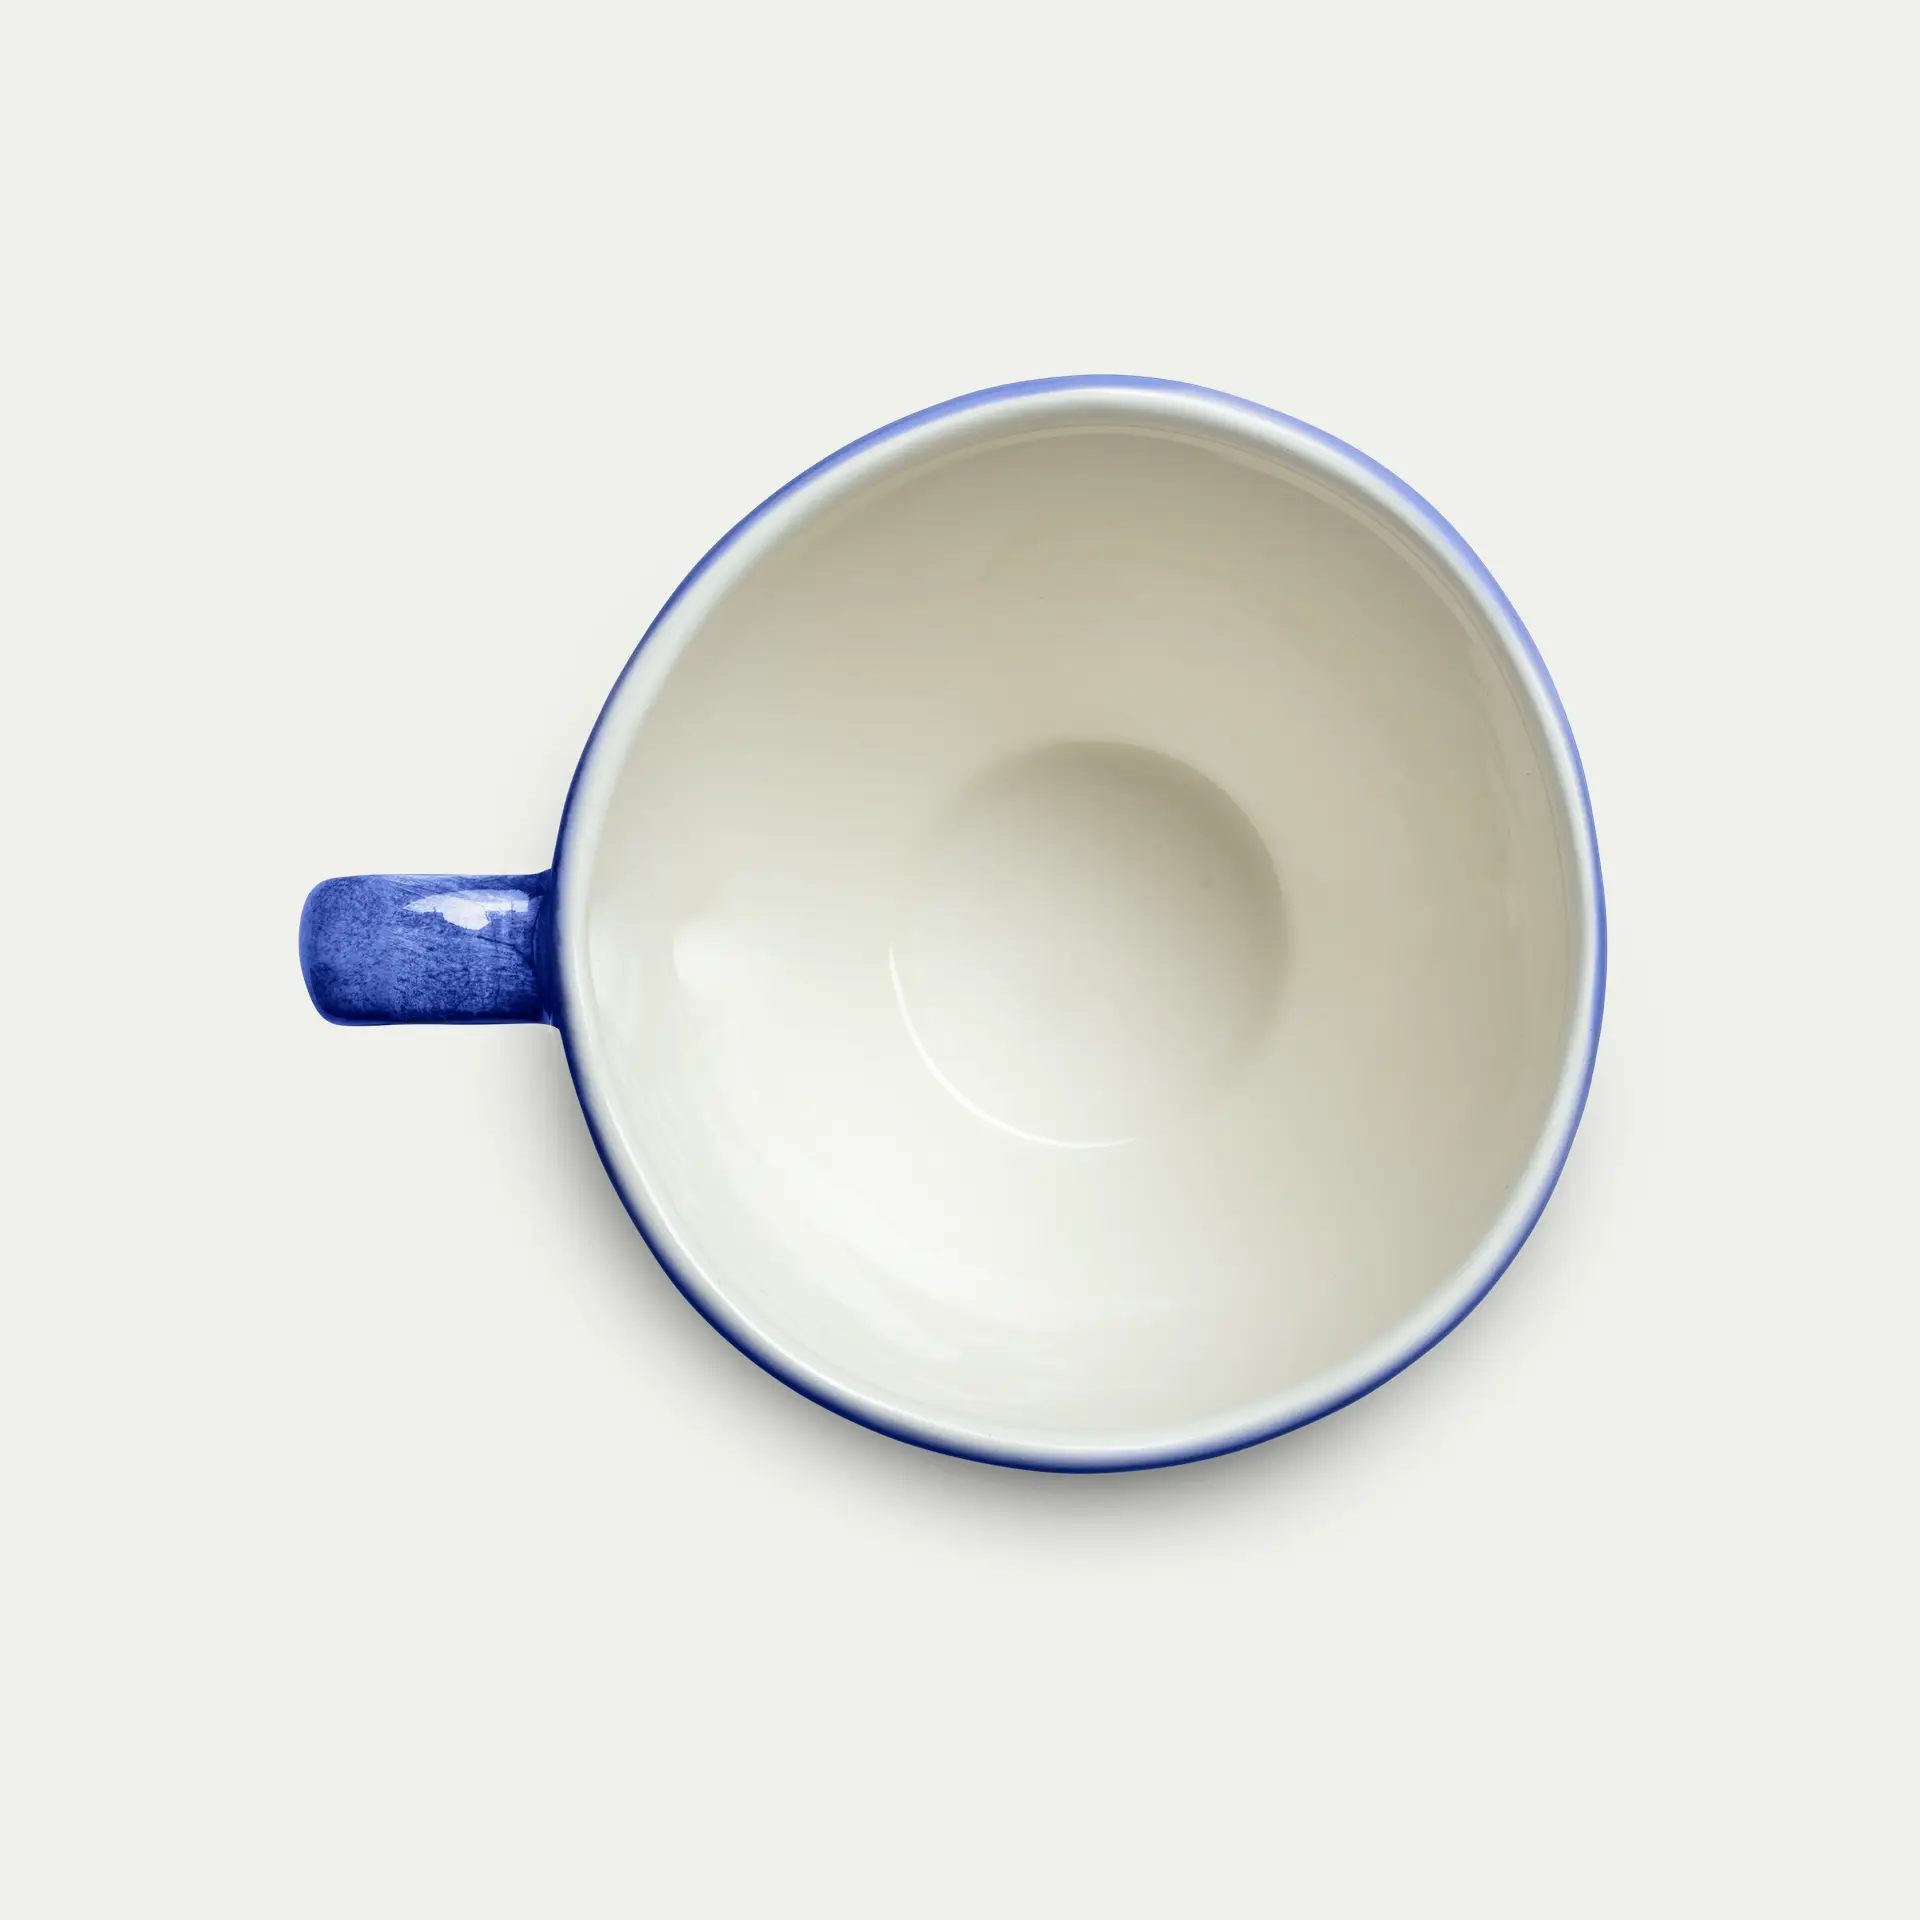 Basic Mug